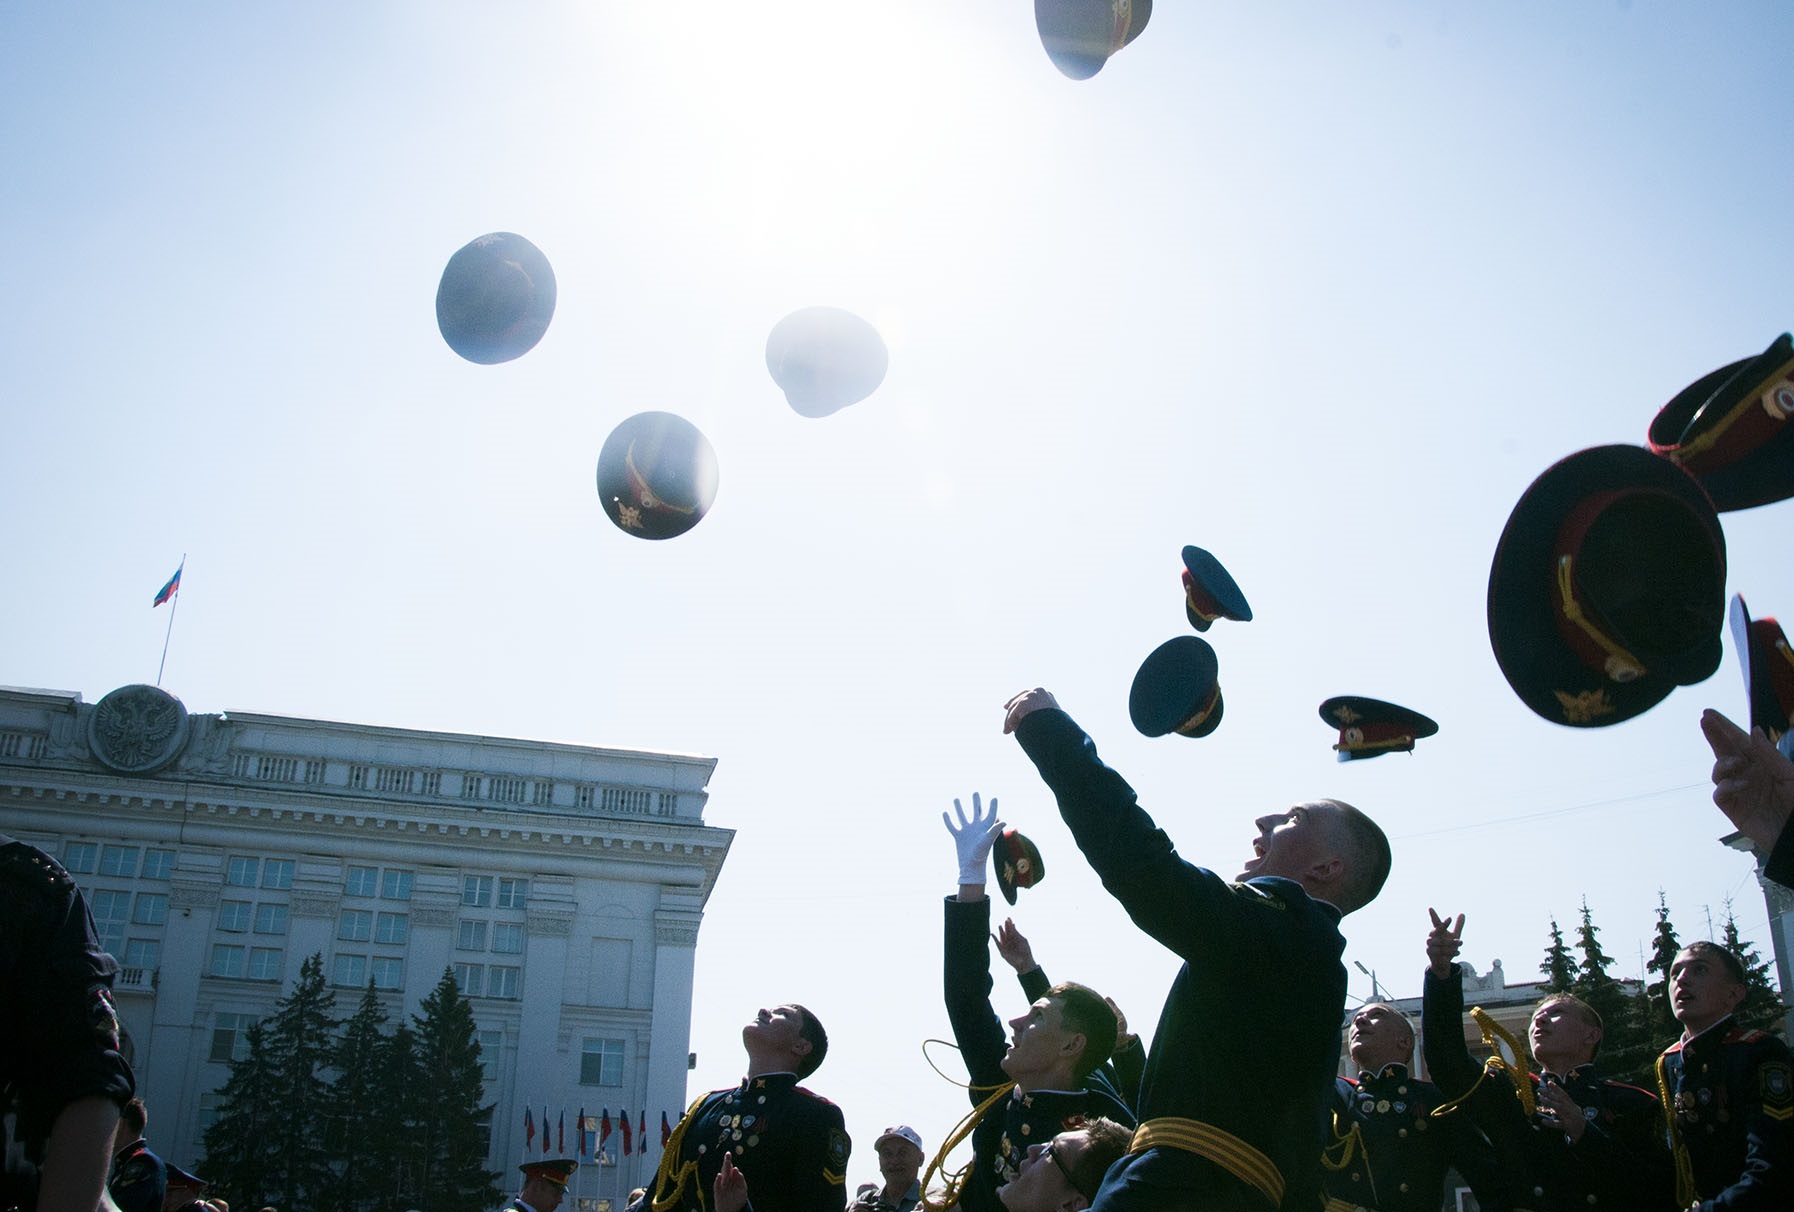 99 кузбасских одиннадцатиклассников получили материальную помощь для подготовки к выпускному балу 